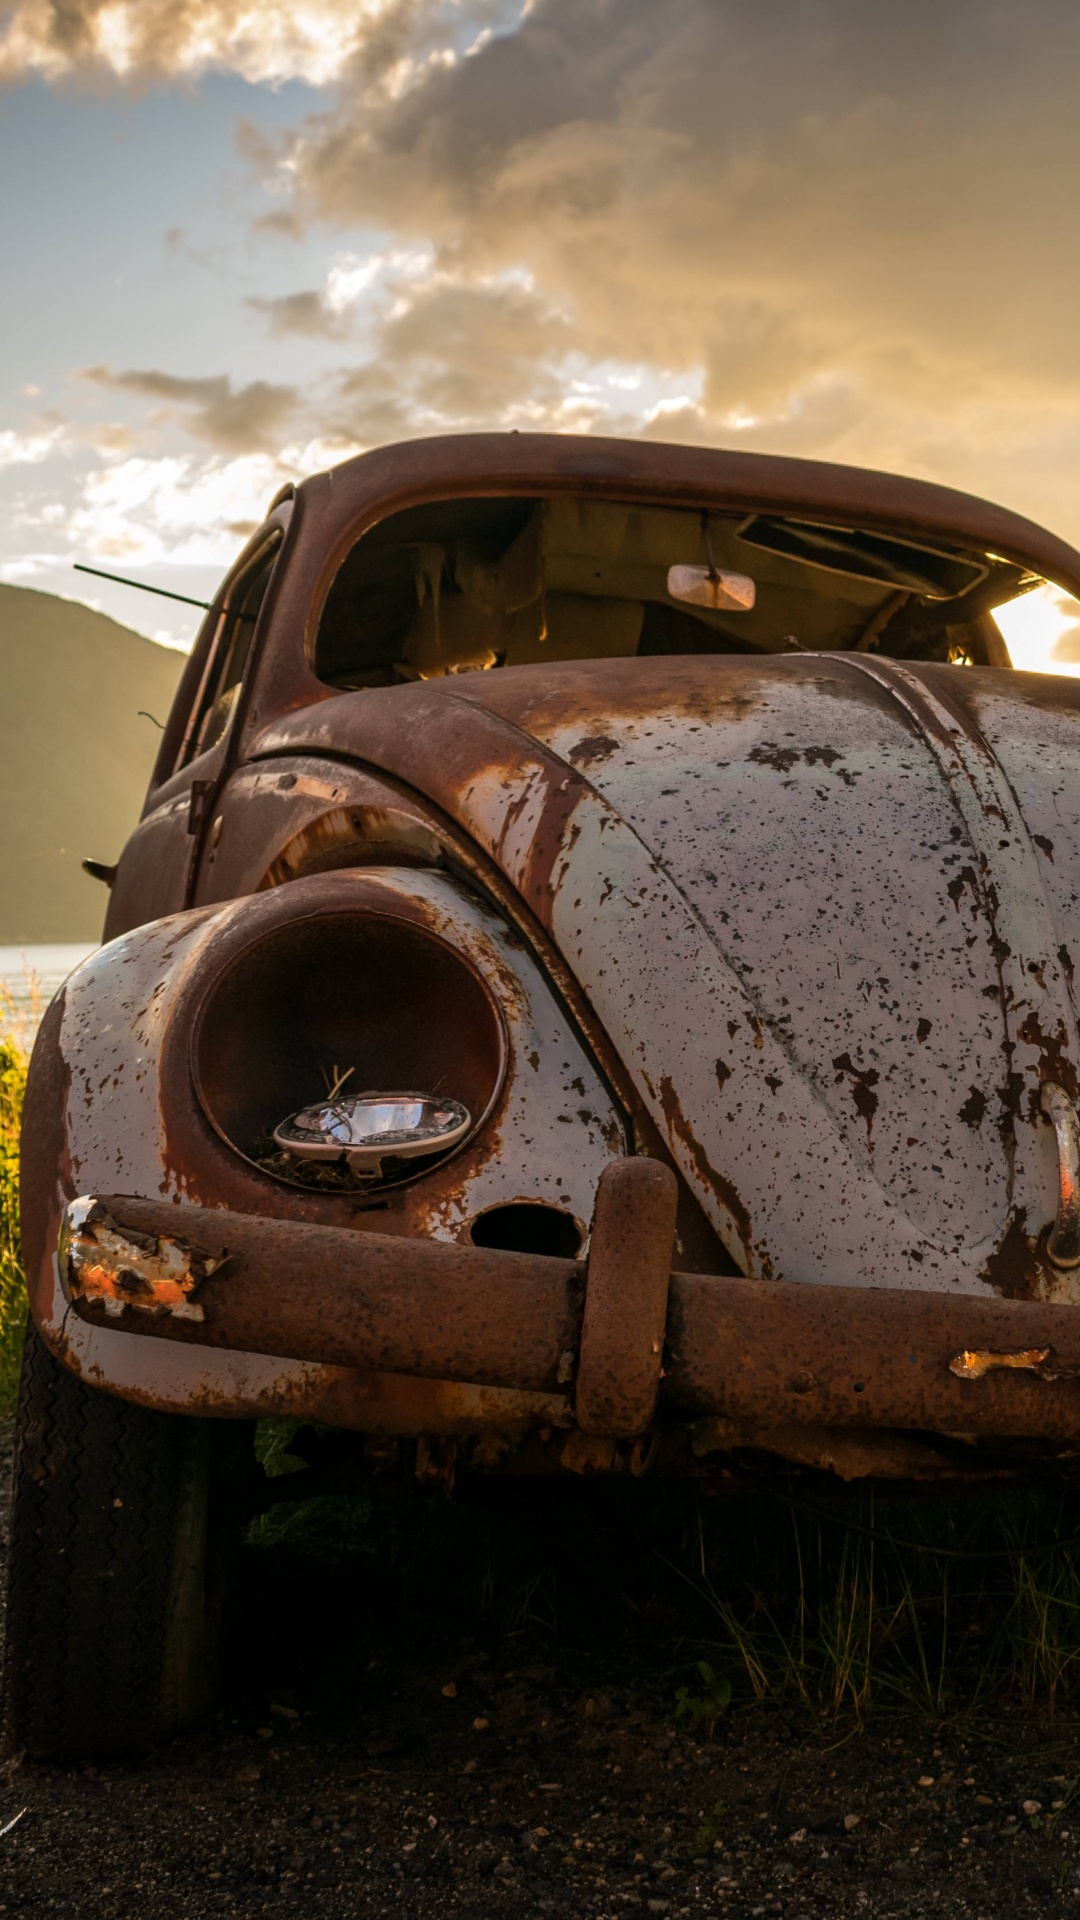 Brown Vintage Car Sur Terrain D'herbe Verte Pendant la Journée. Wallpaper in 1080x1920 Resolution